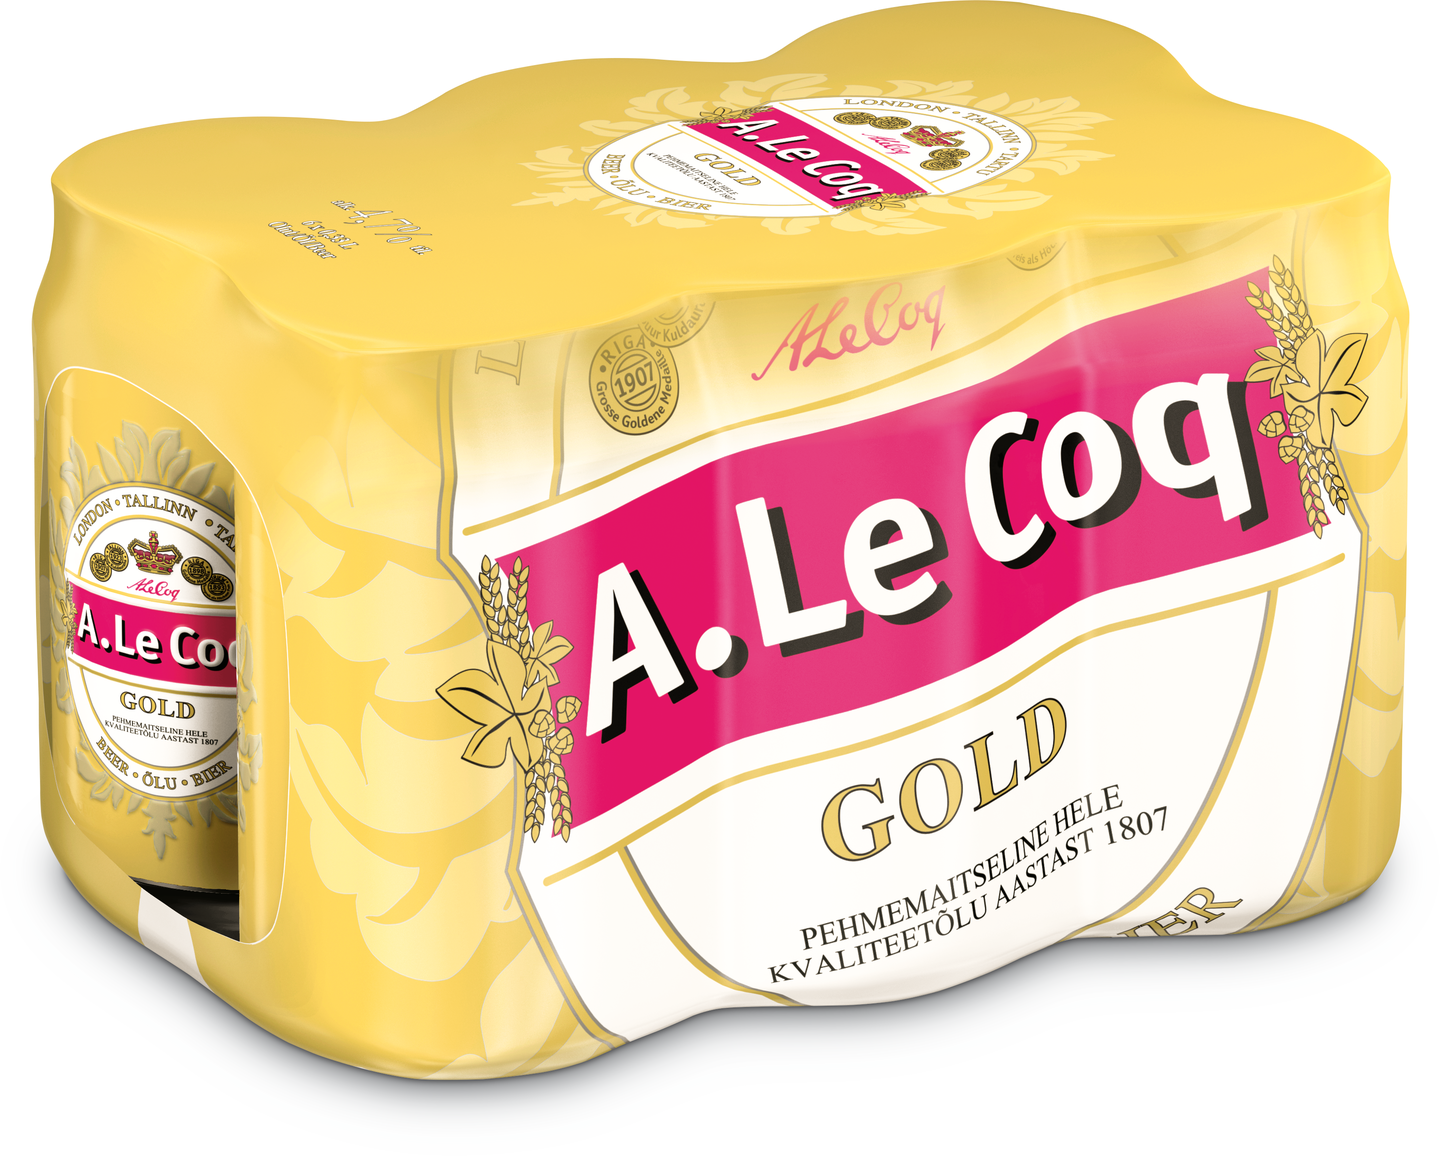 A. Le Coq Gold 4,7% 0,33l tlk 6-p DOLLY